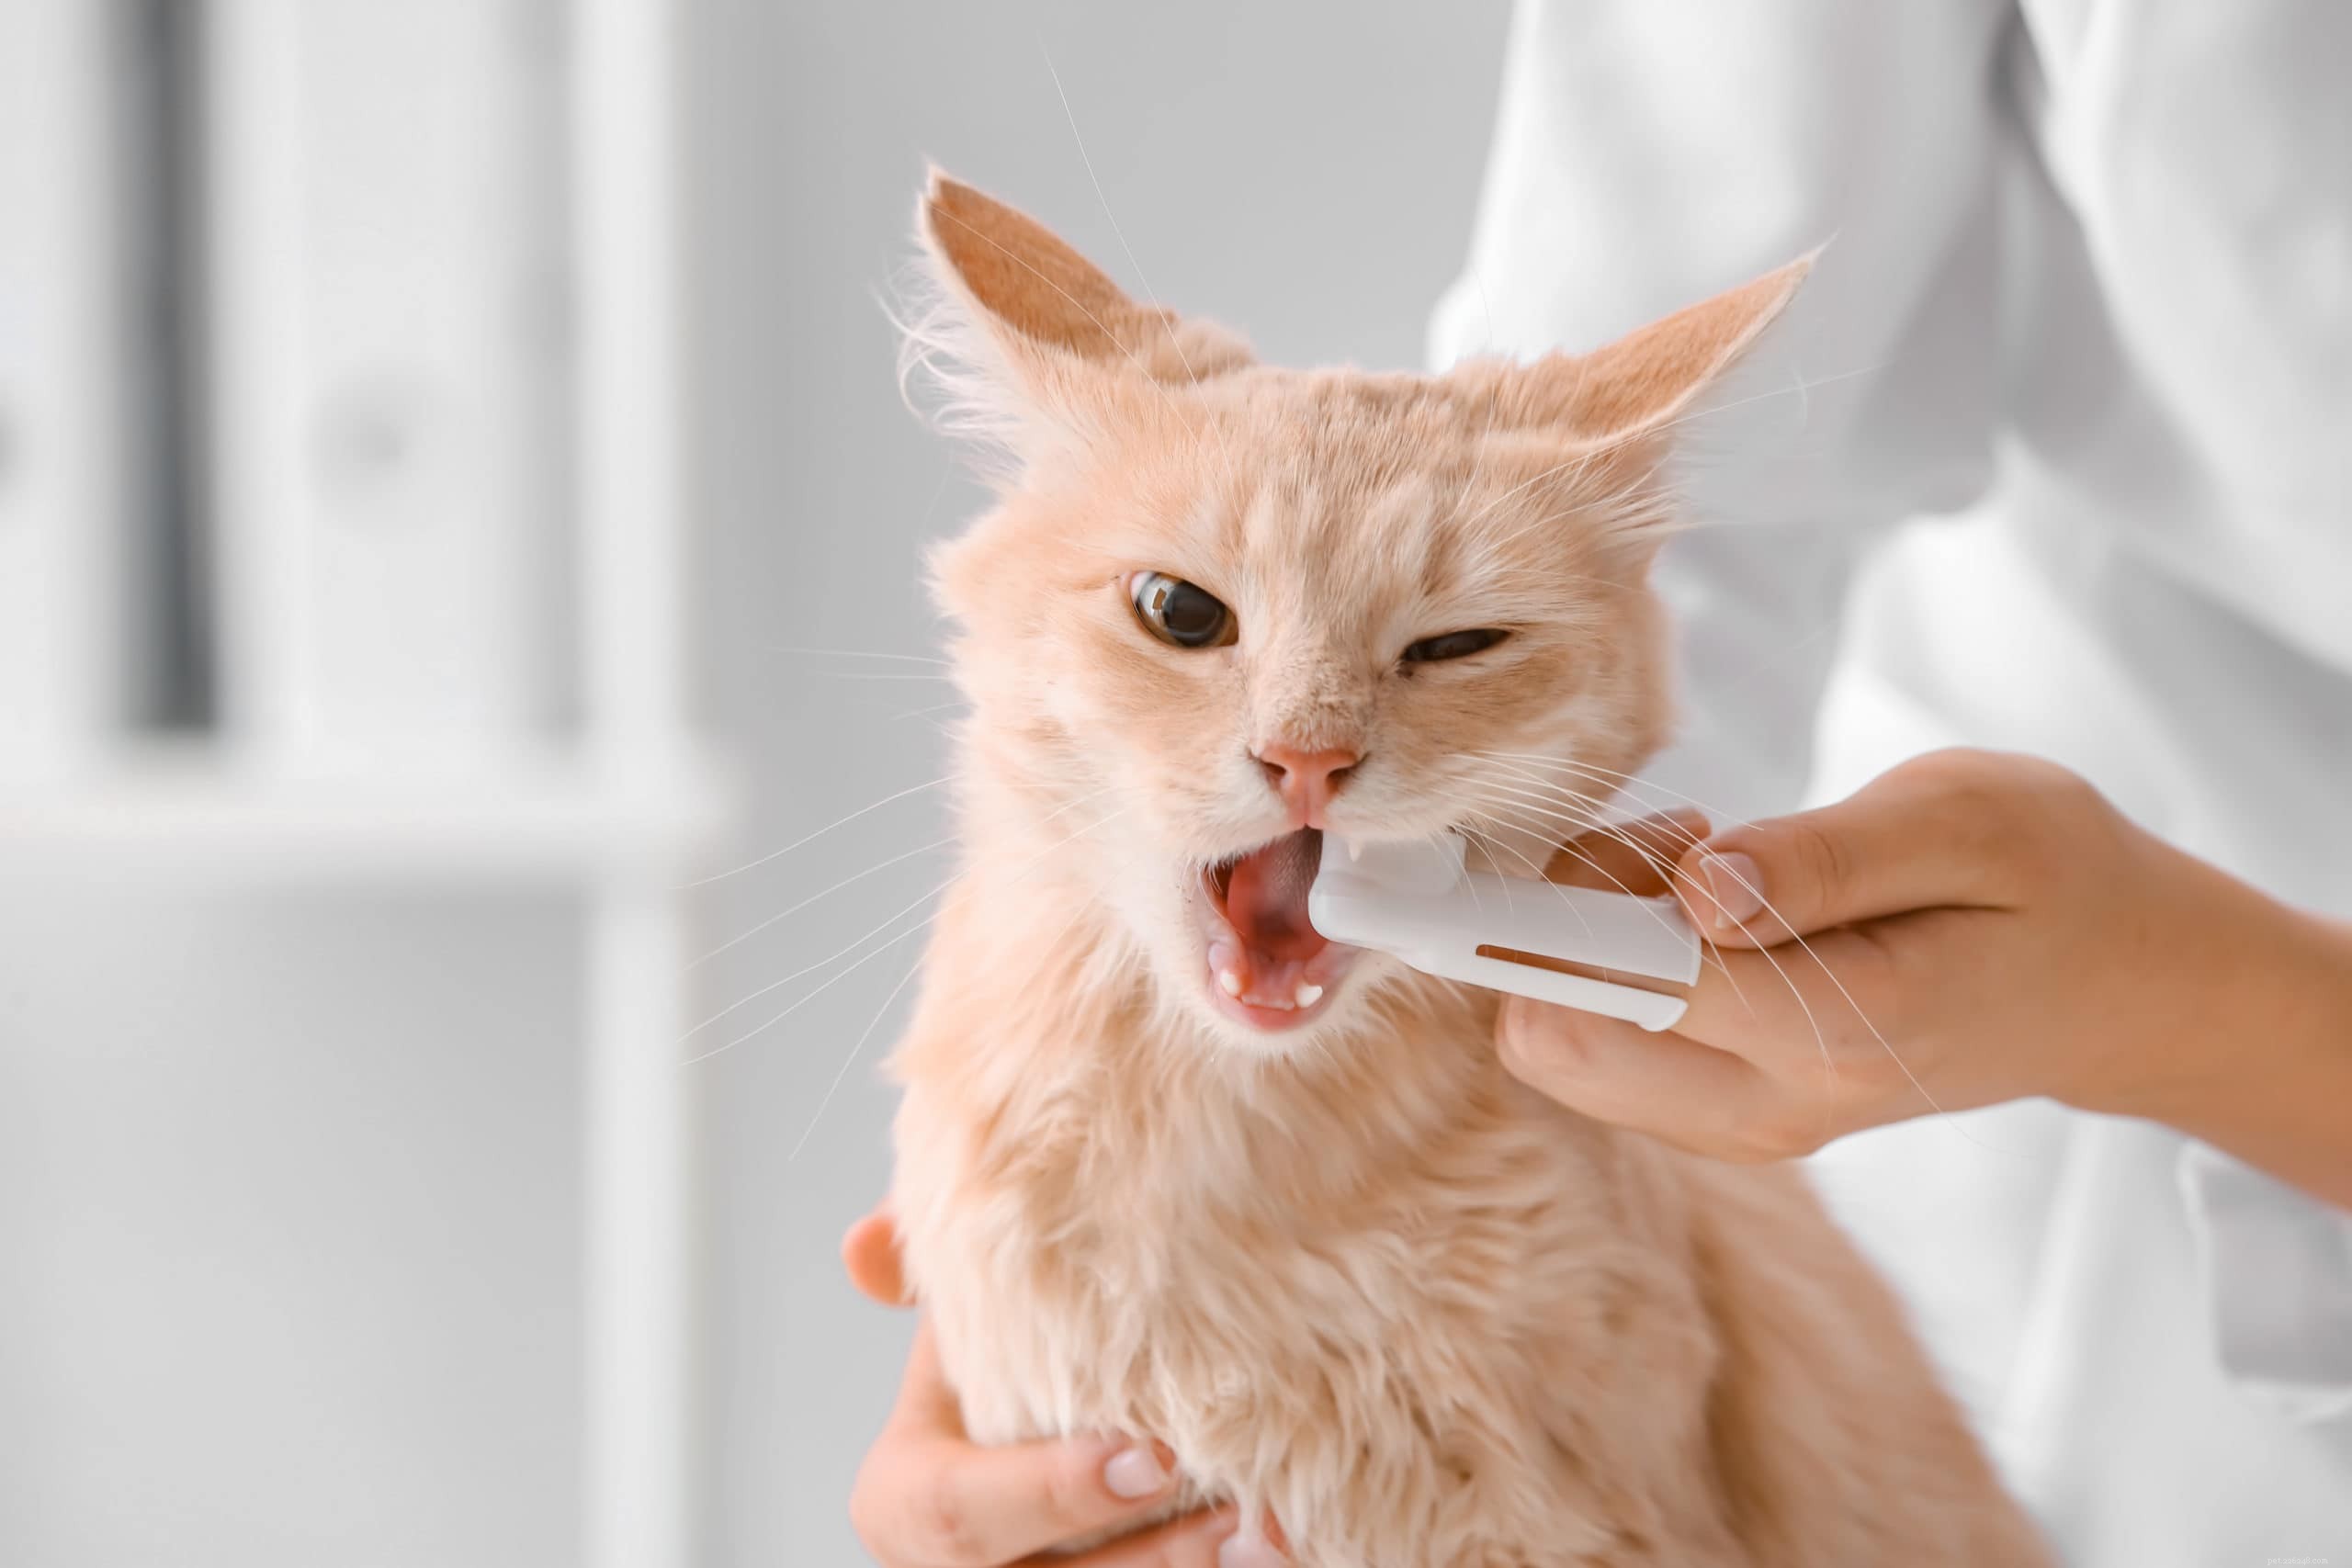 10 beste tandenborstels voor katten in 2022 – Review en topkeuzes